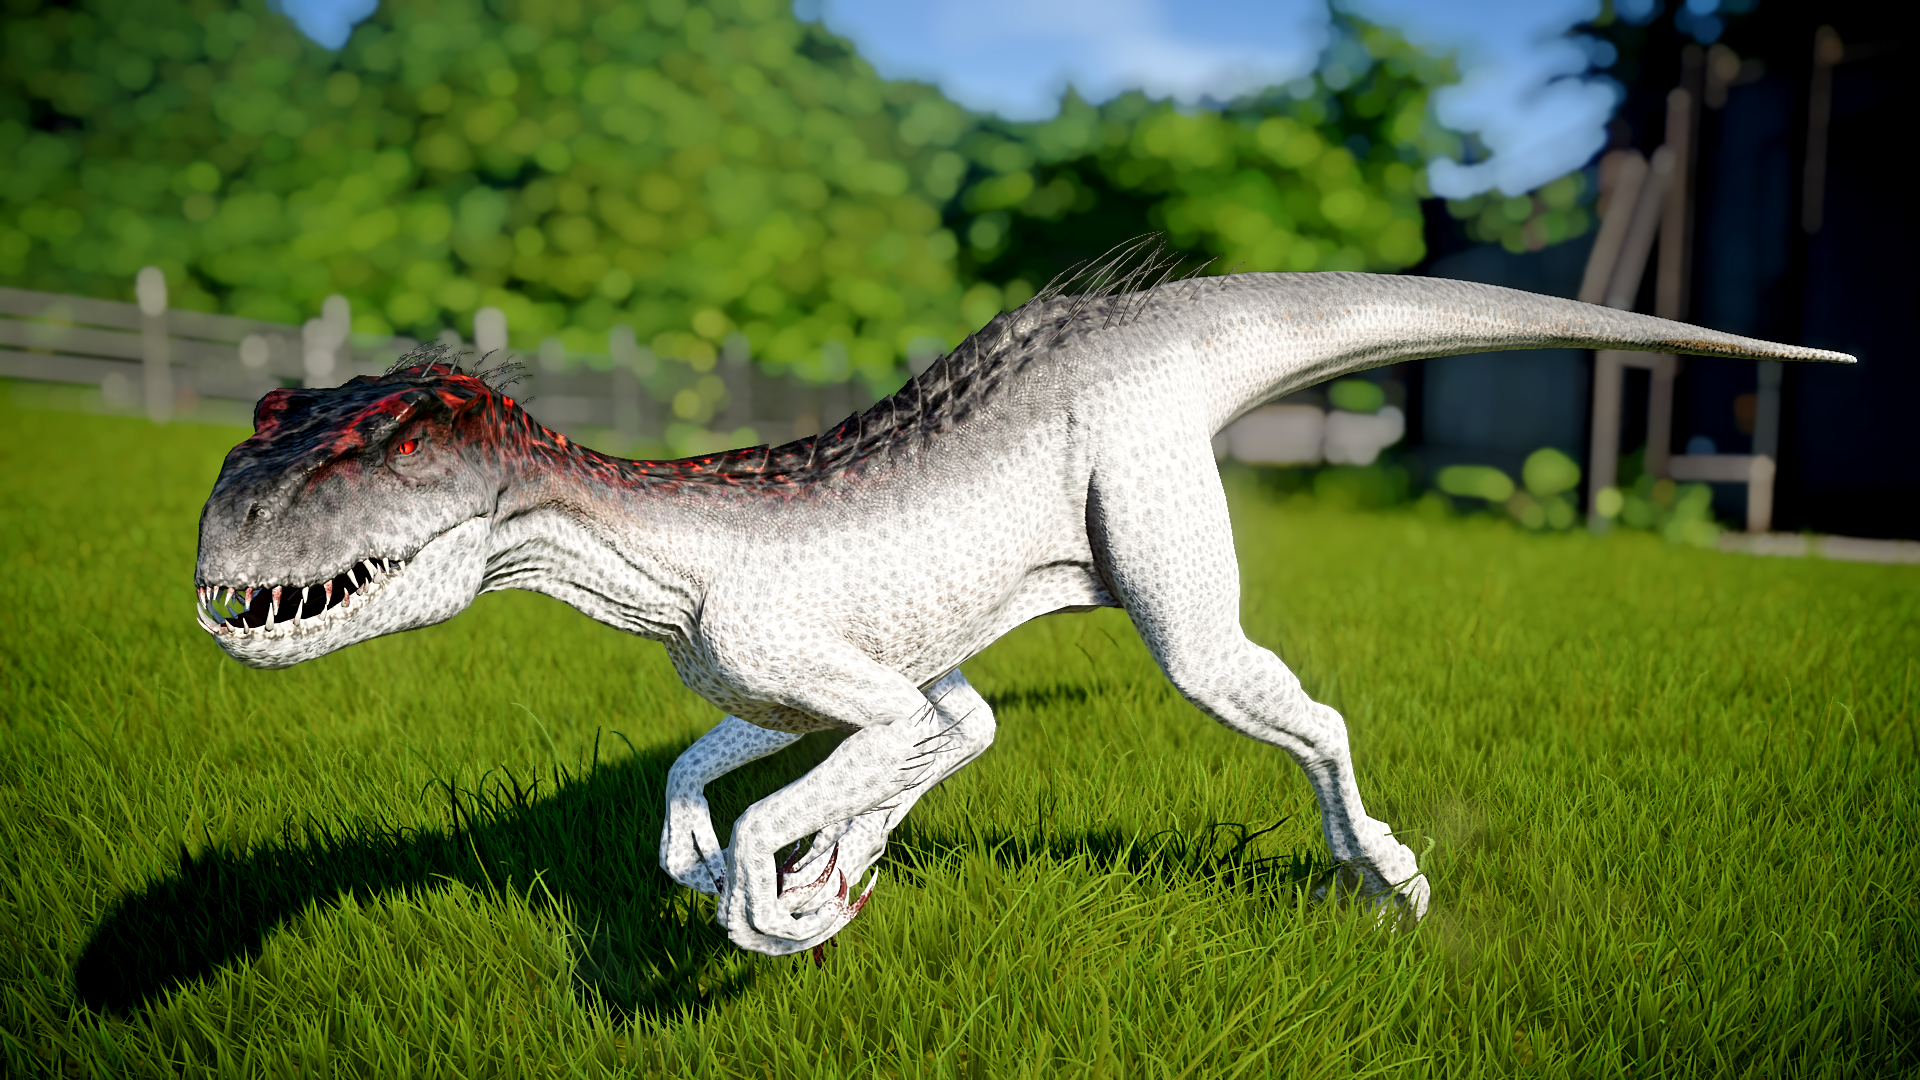 best Indoraptor image on Pholder. Jurassic Park